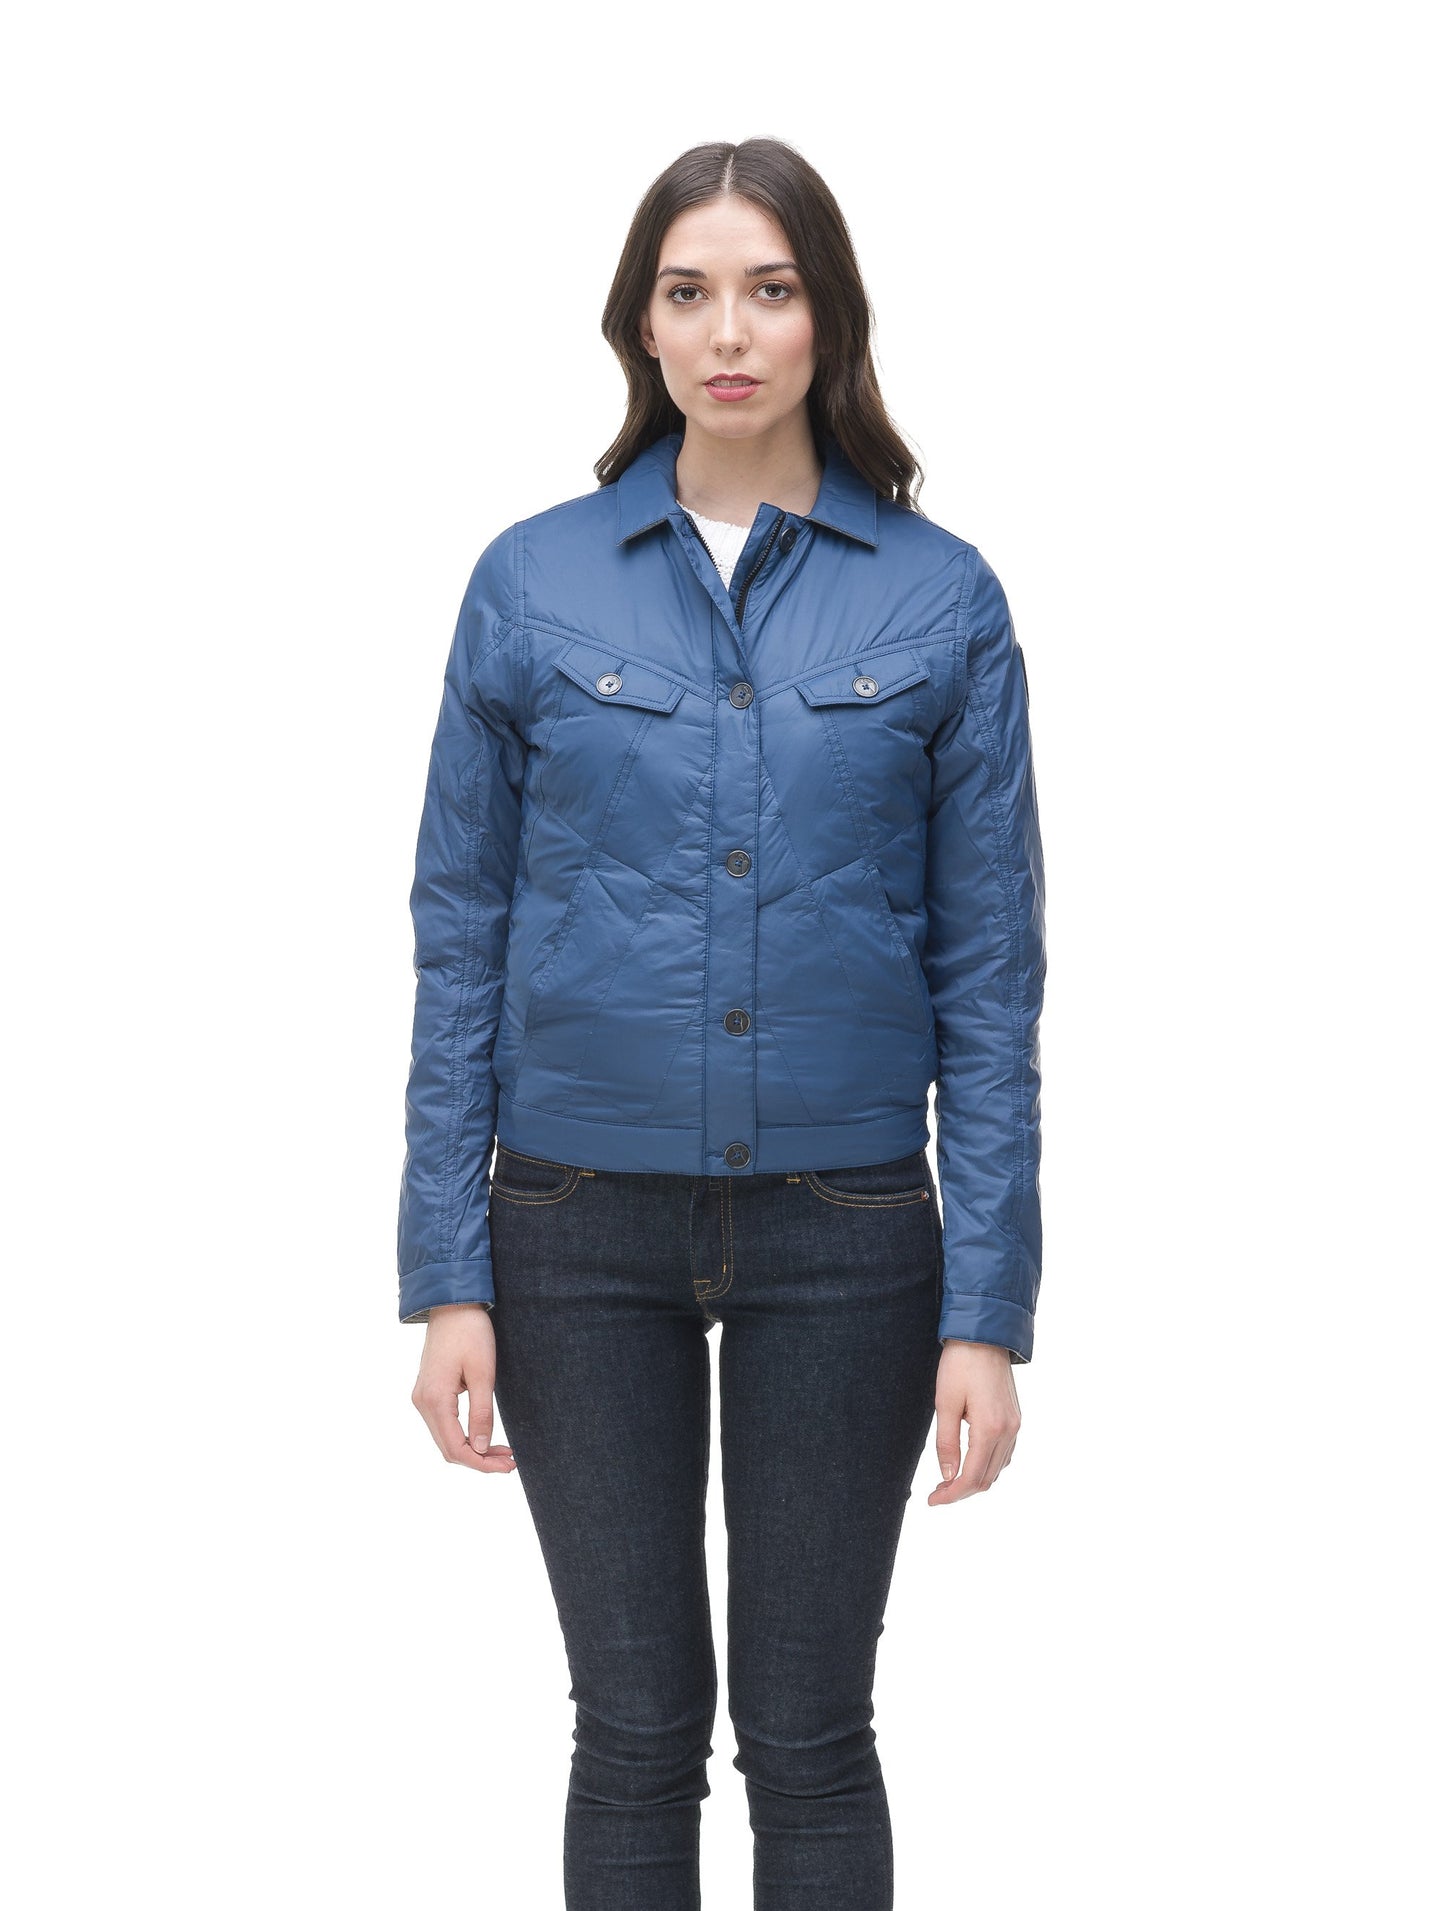 Lightweight cropped women's jacket in Denim Blue